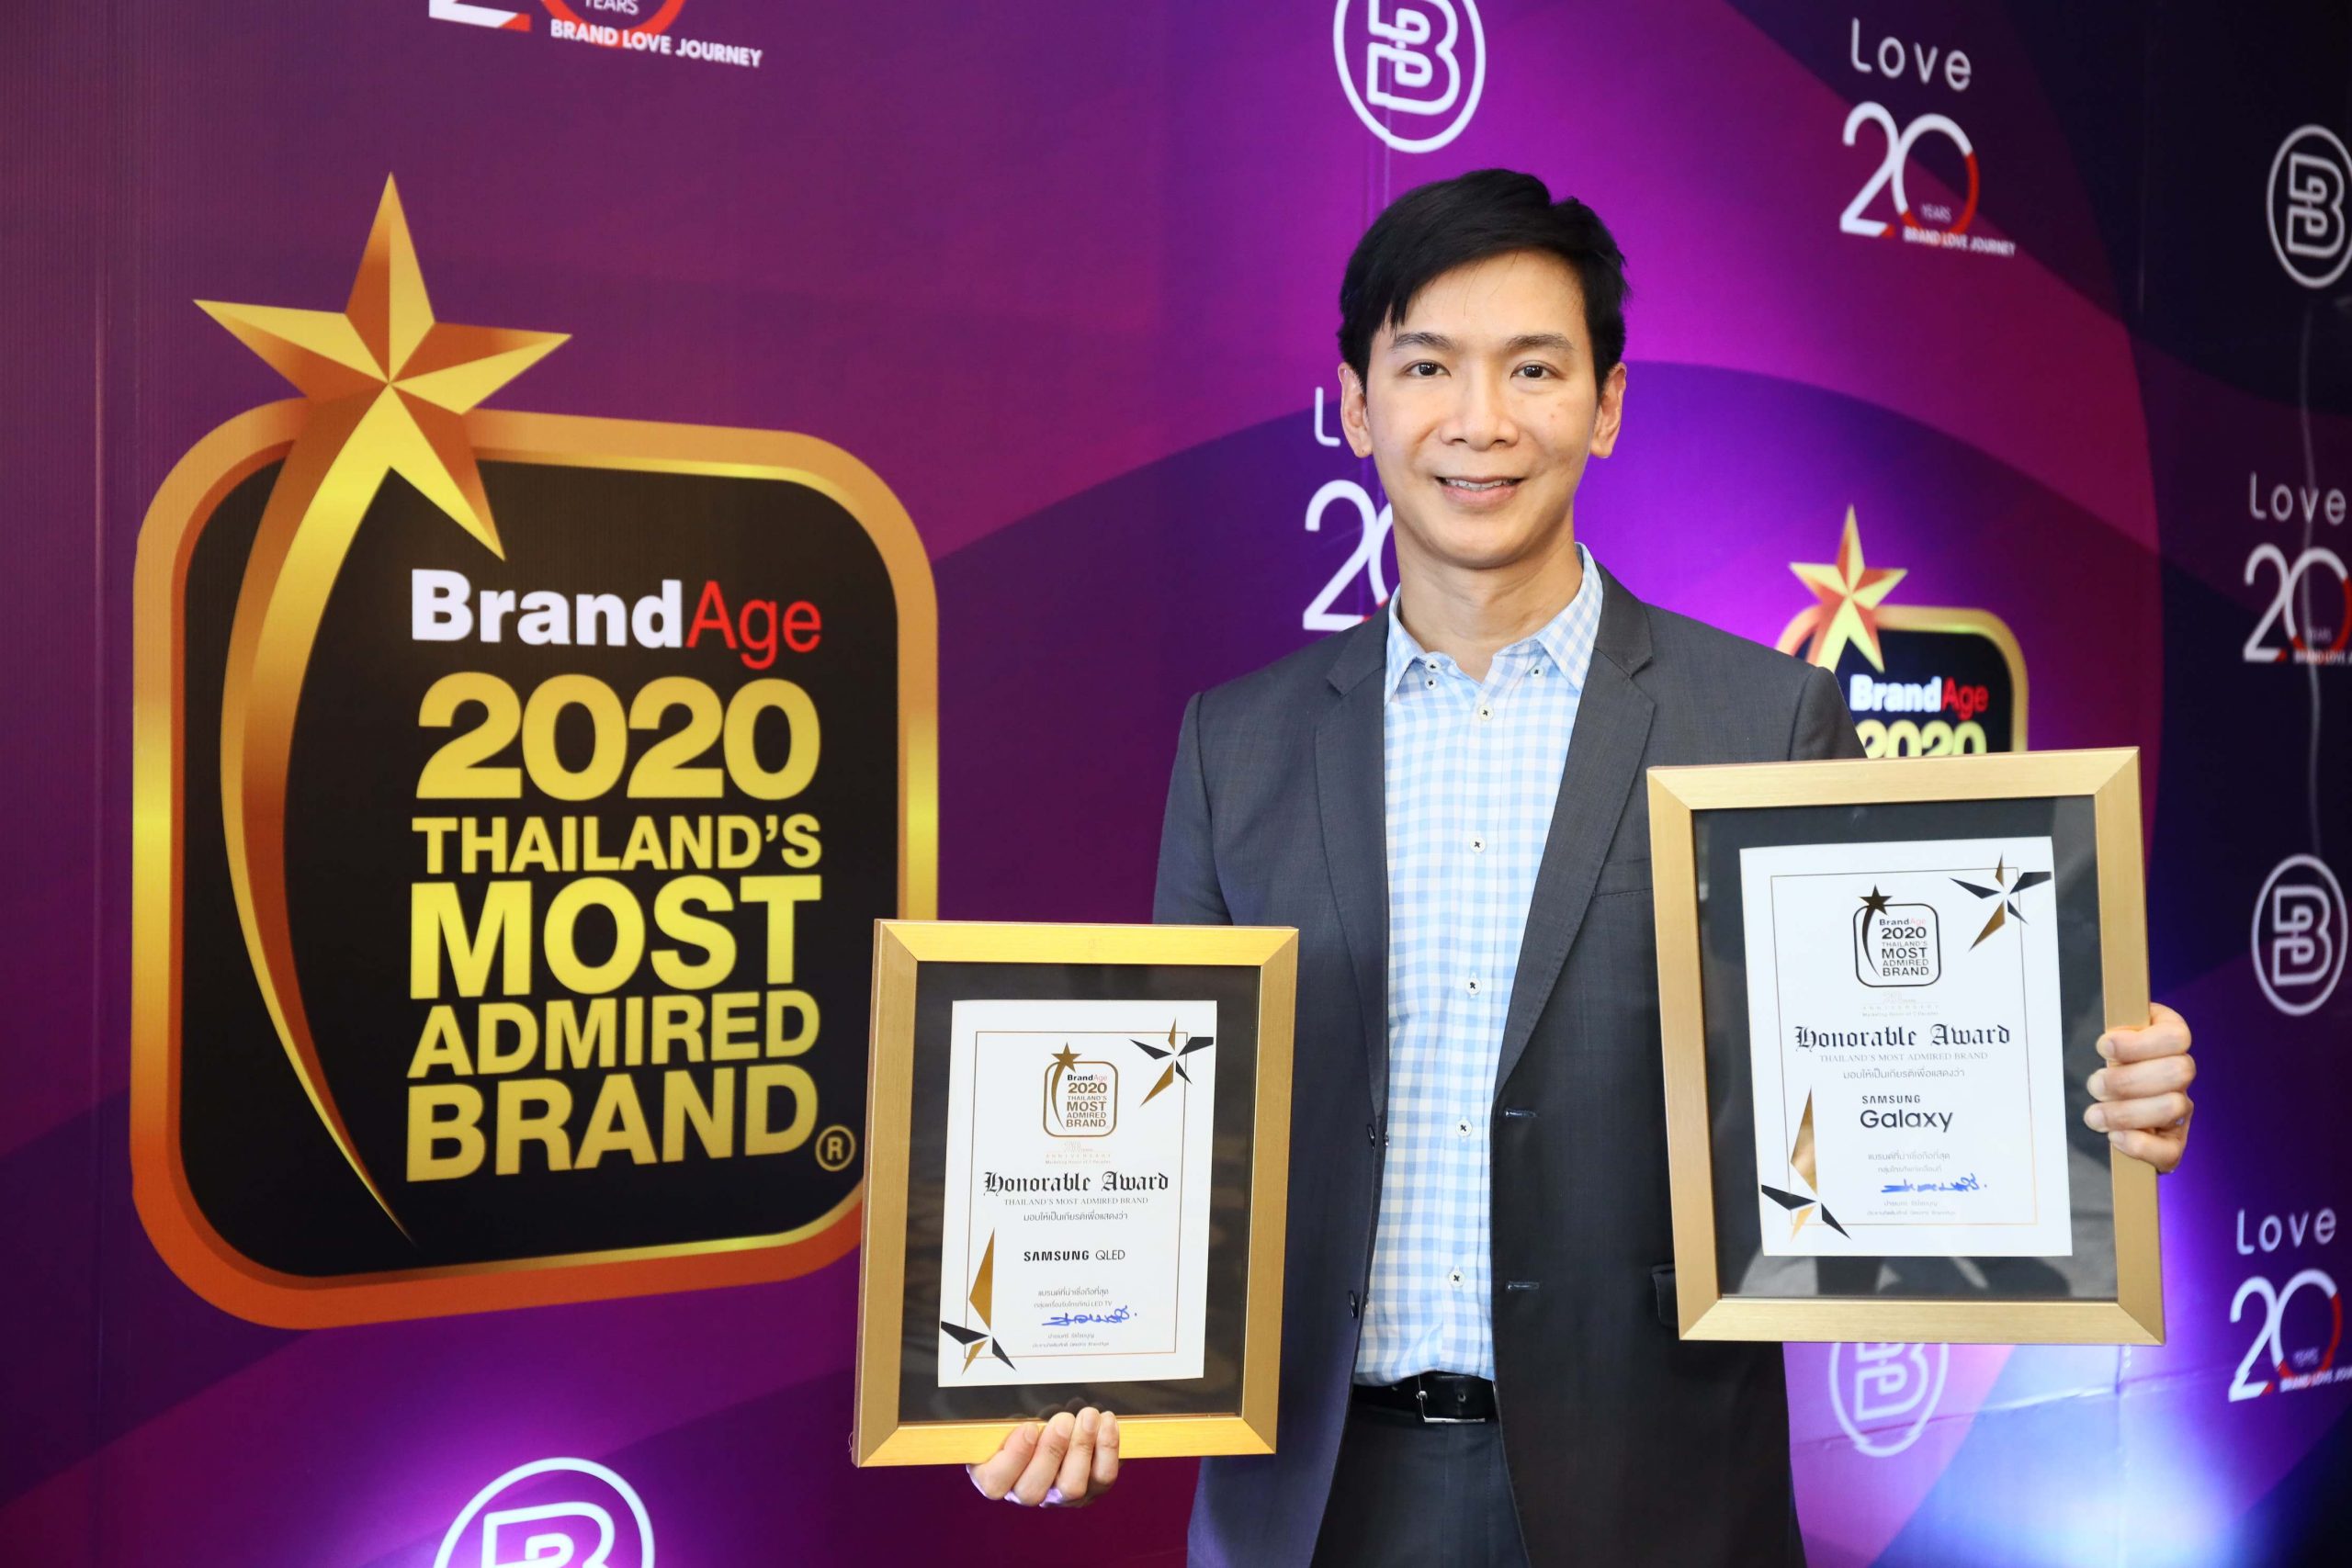 ซัมซุง ครองสุดยอดแบรนด์ที่น่าเชื่อถือที่สุด คว้า 2 รางวัลจากเวที Thailands Most Admired Brand ในกลุ่มสมาร์ทโฟนและทีวี ประจำปี